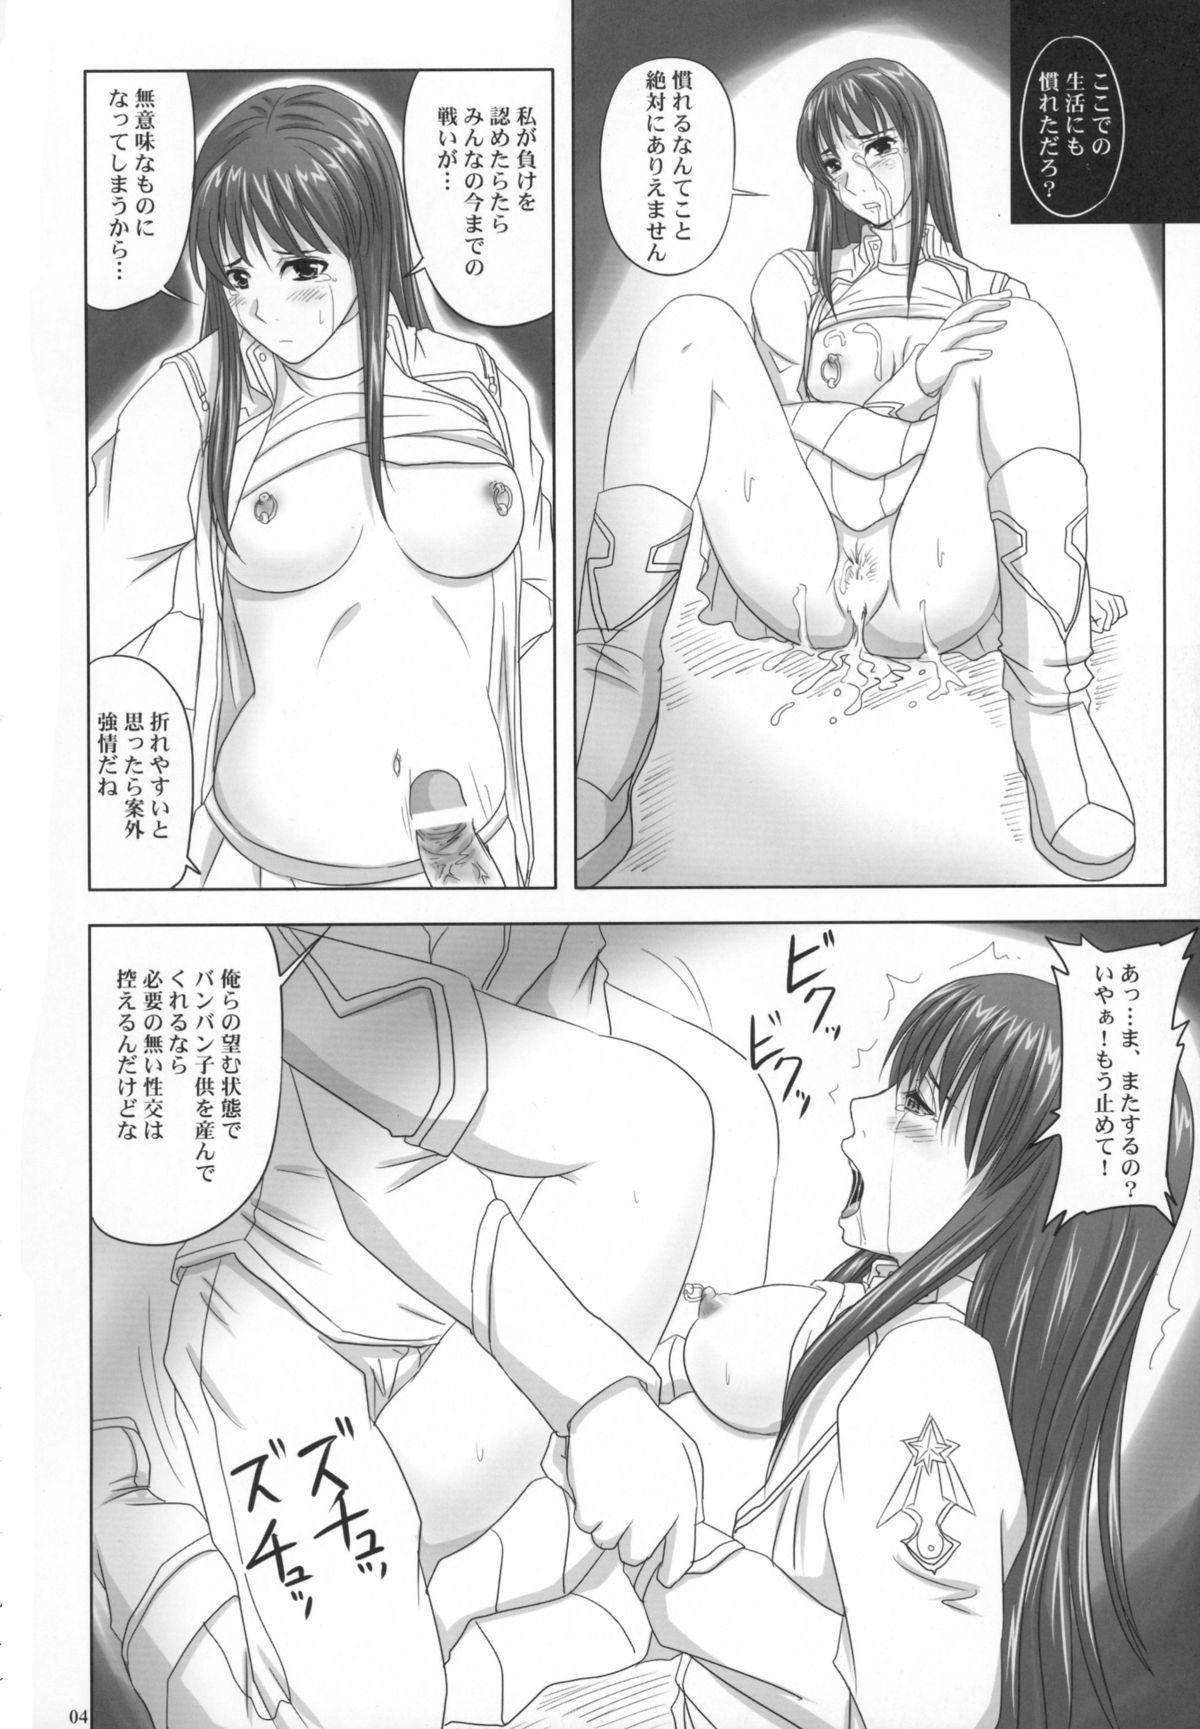 Live Daishiji SuuRobo Heroine Daisakusen - Super robot wars Hot Women Having Sex - Page 4